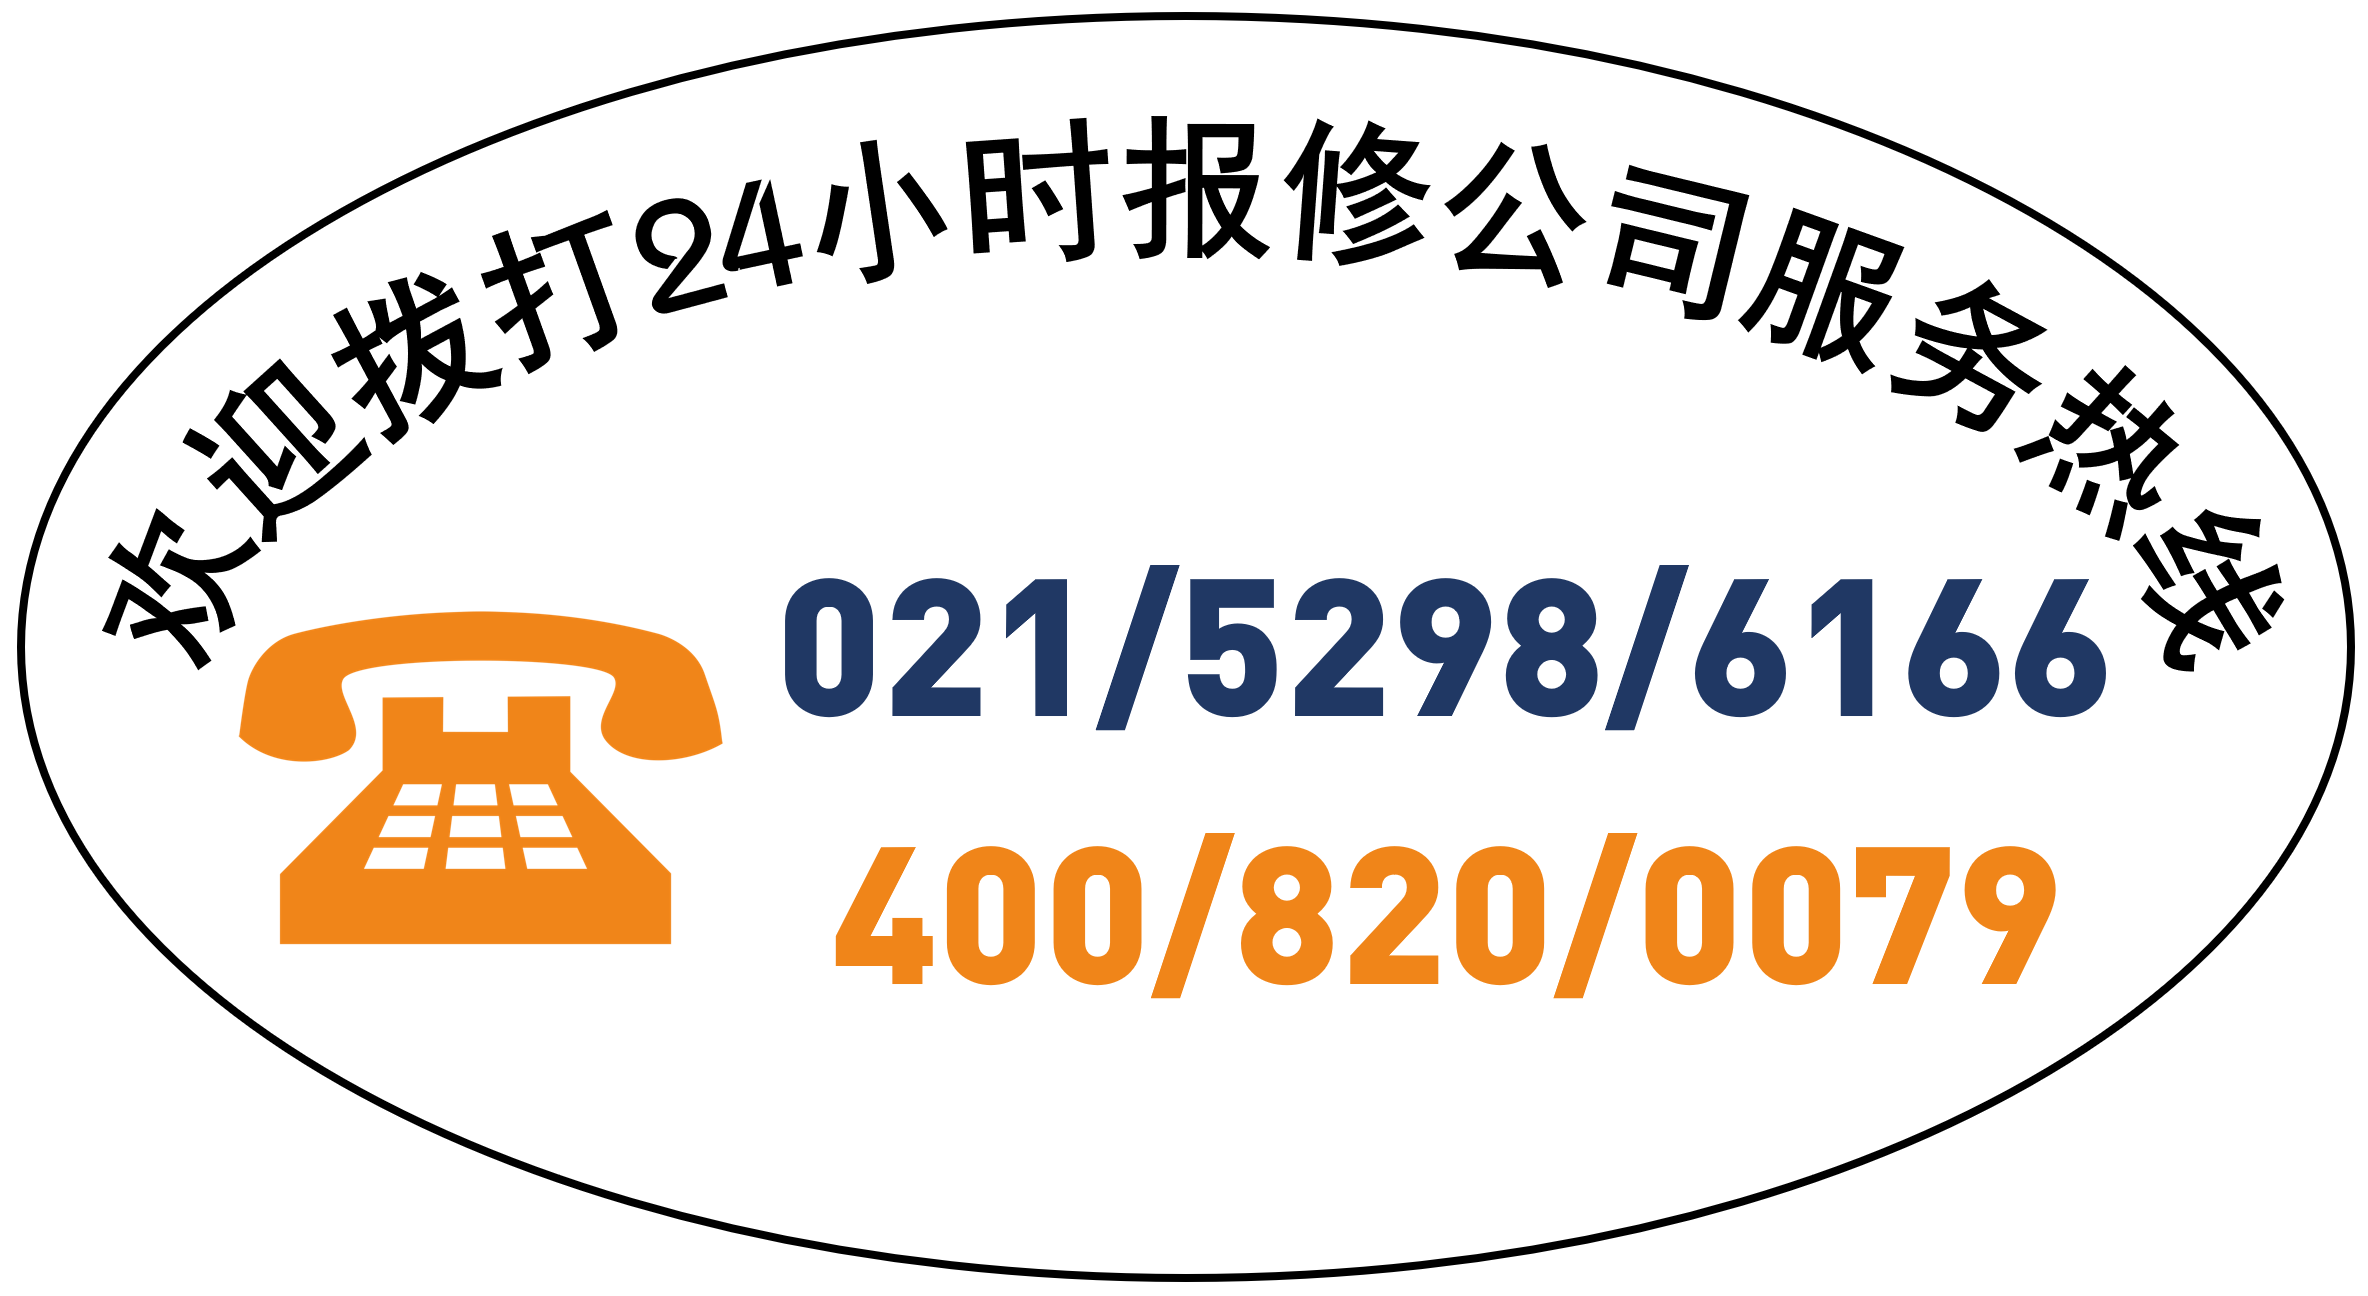 上海雪嘉风幕柜24个小时售后服务中心